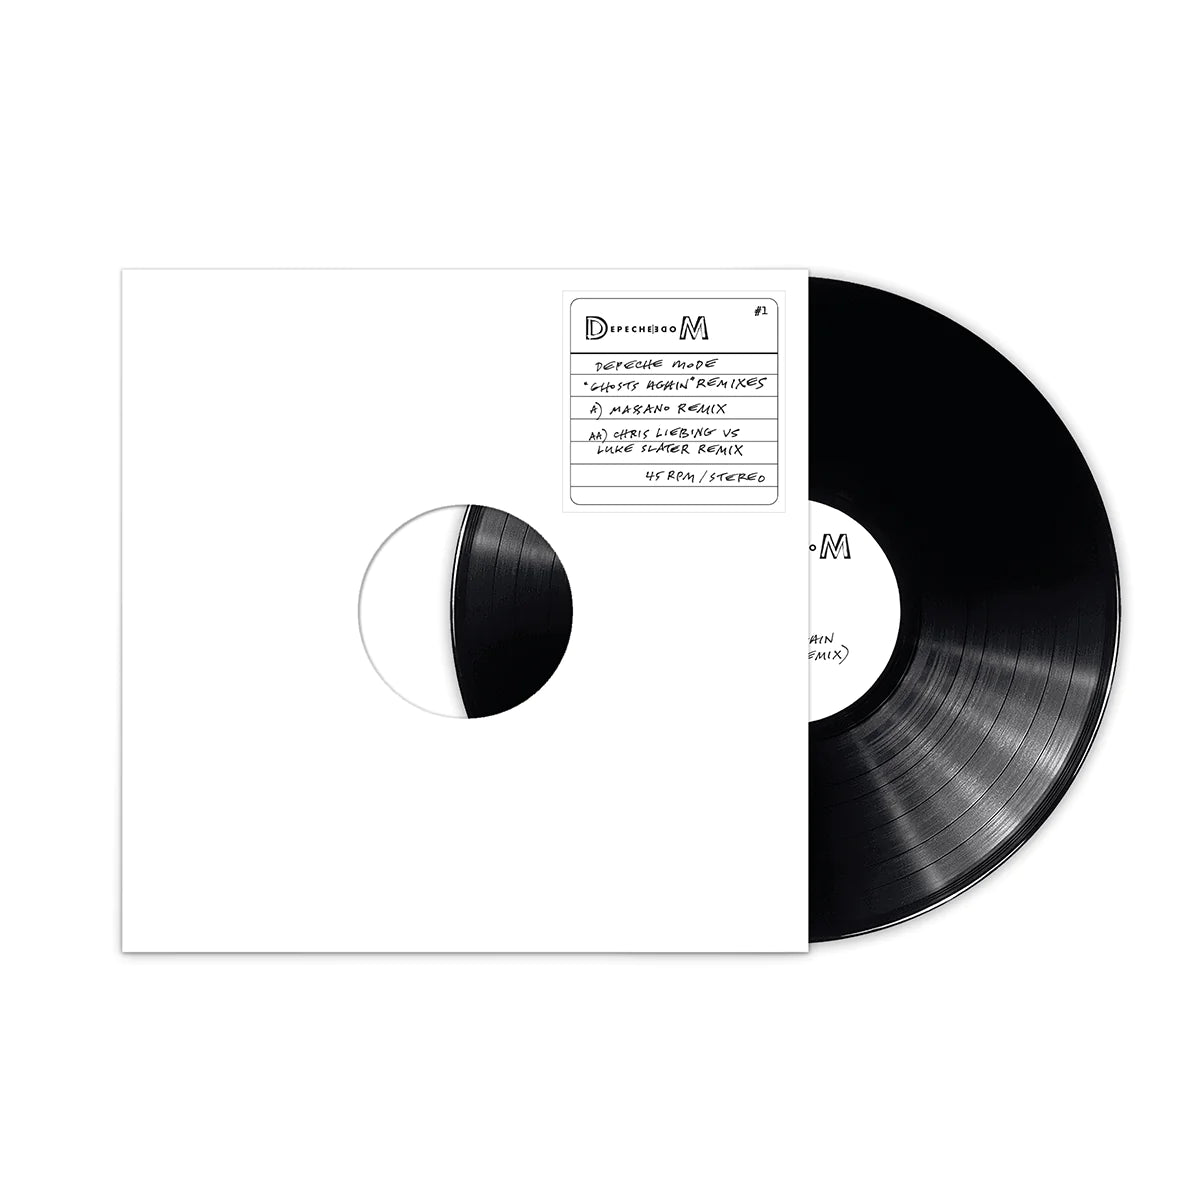 Ghosts Again (Remixes) Exclusive 12" Vinyl - Depeche Mode